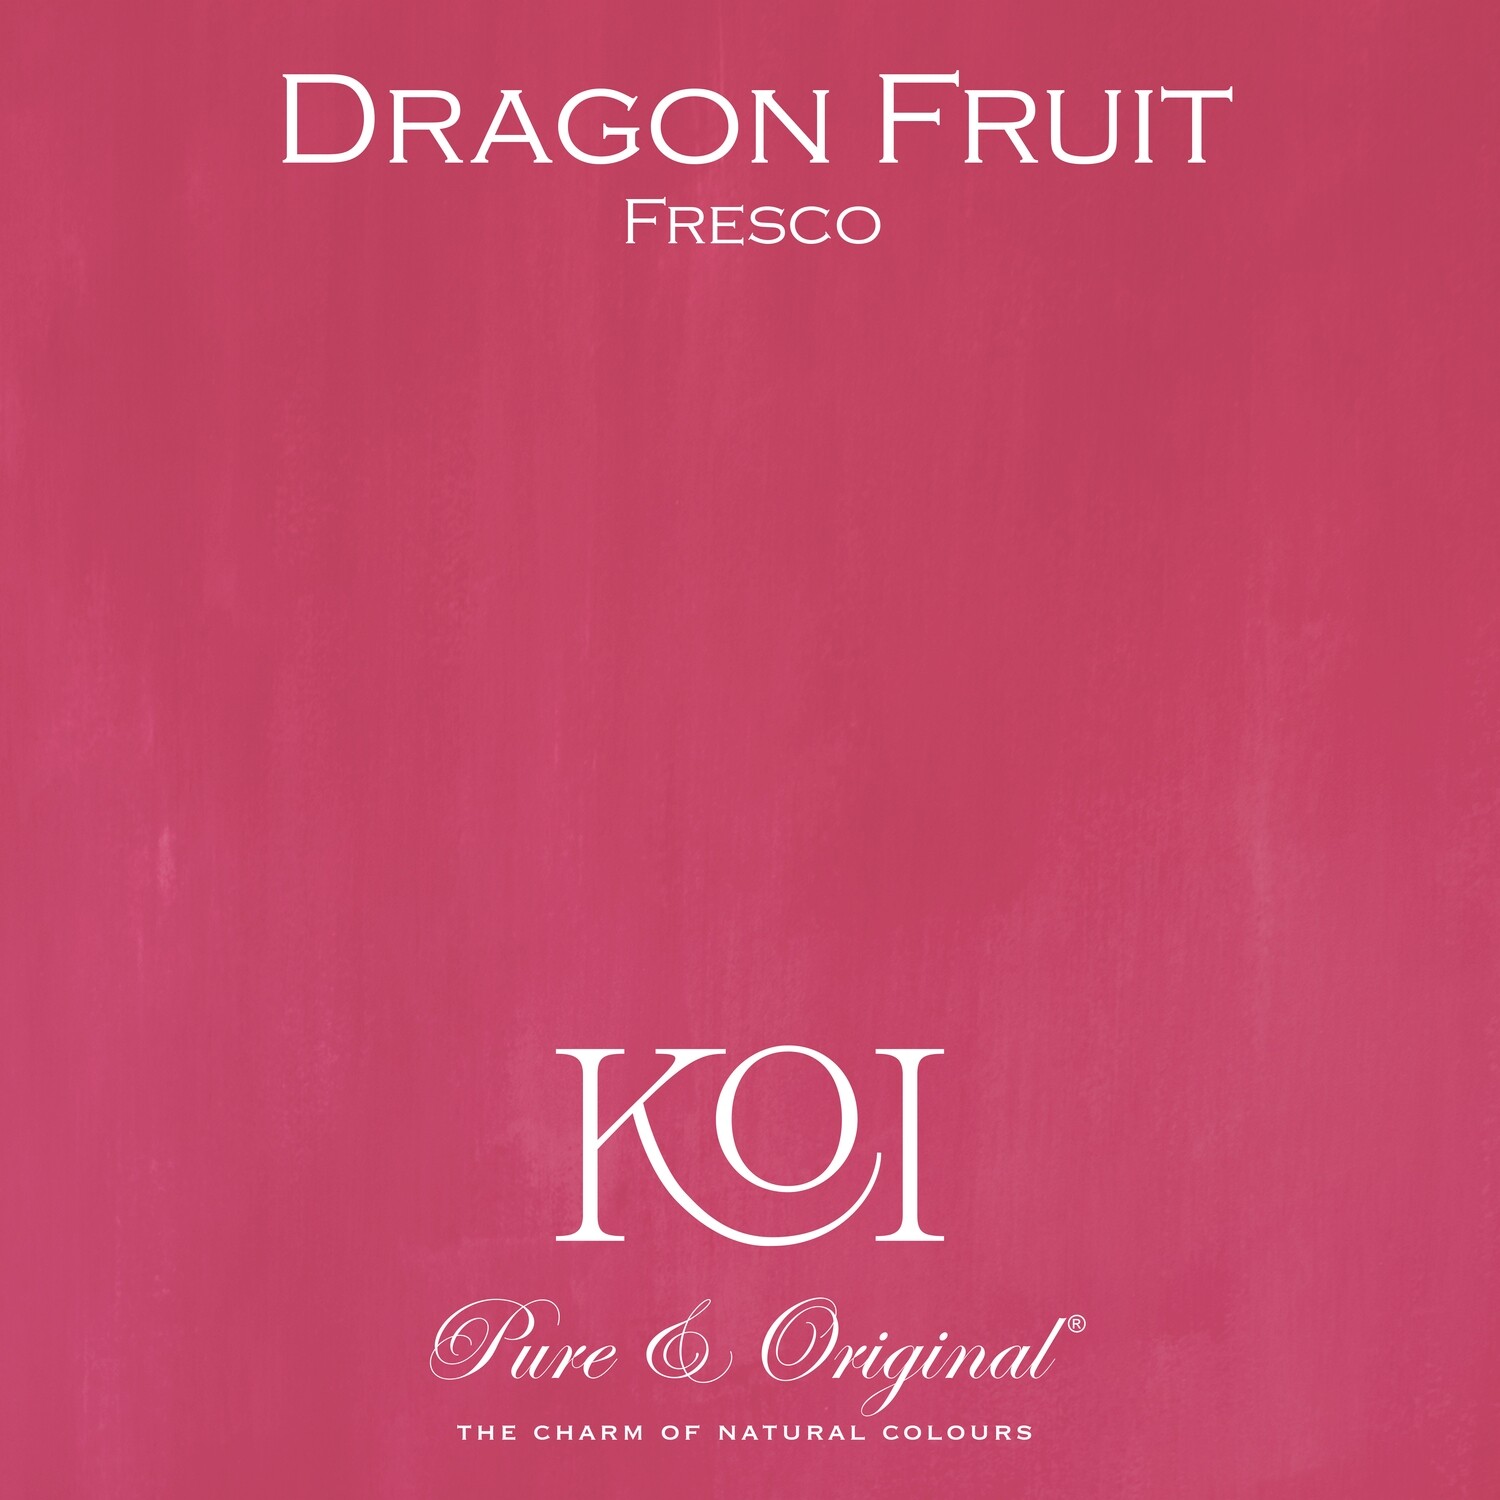 Dragon Fruit Fresco